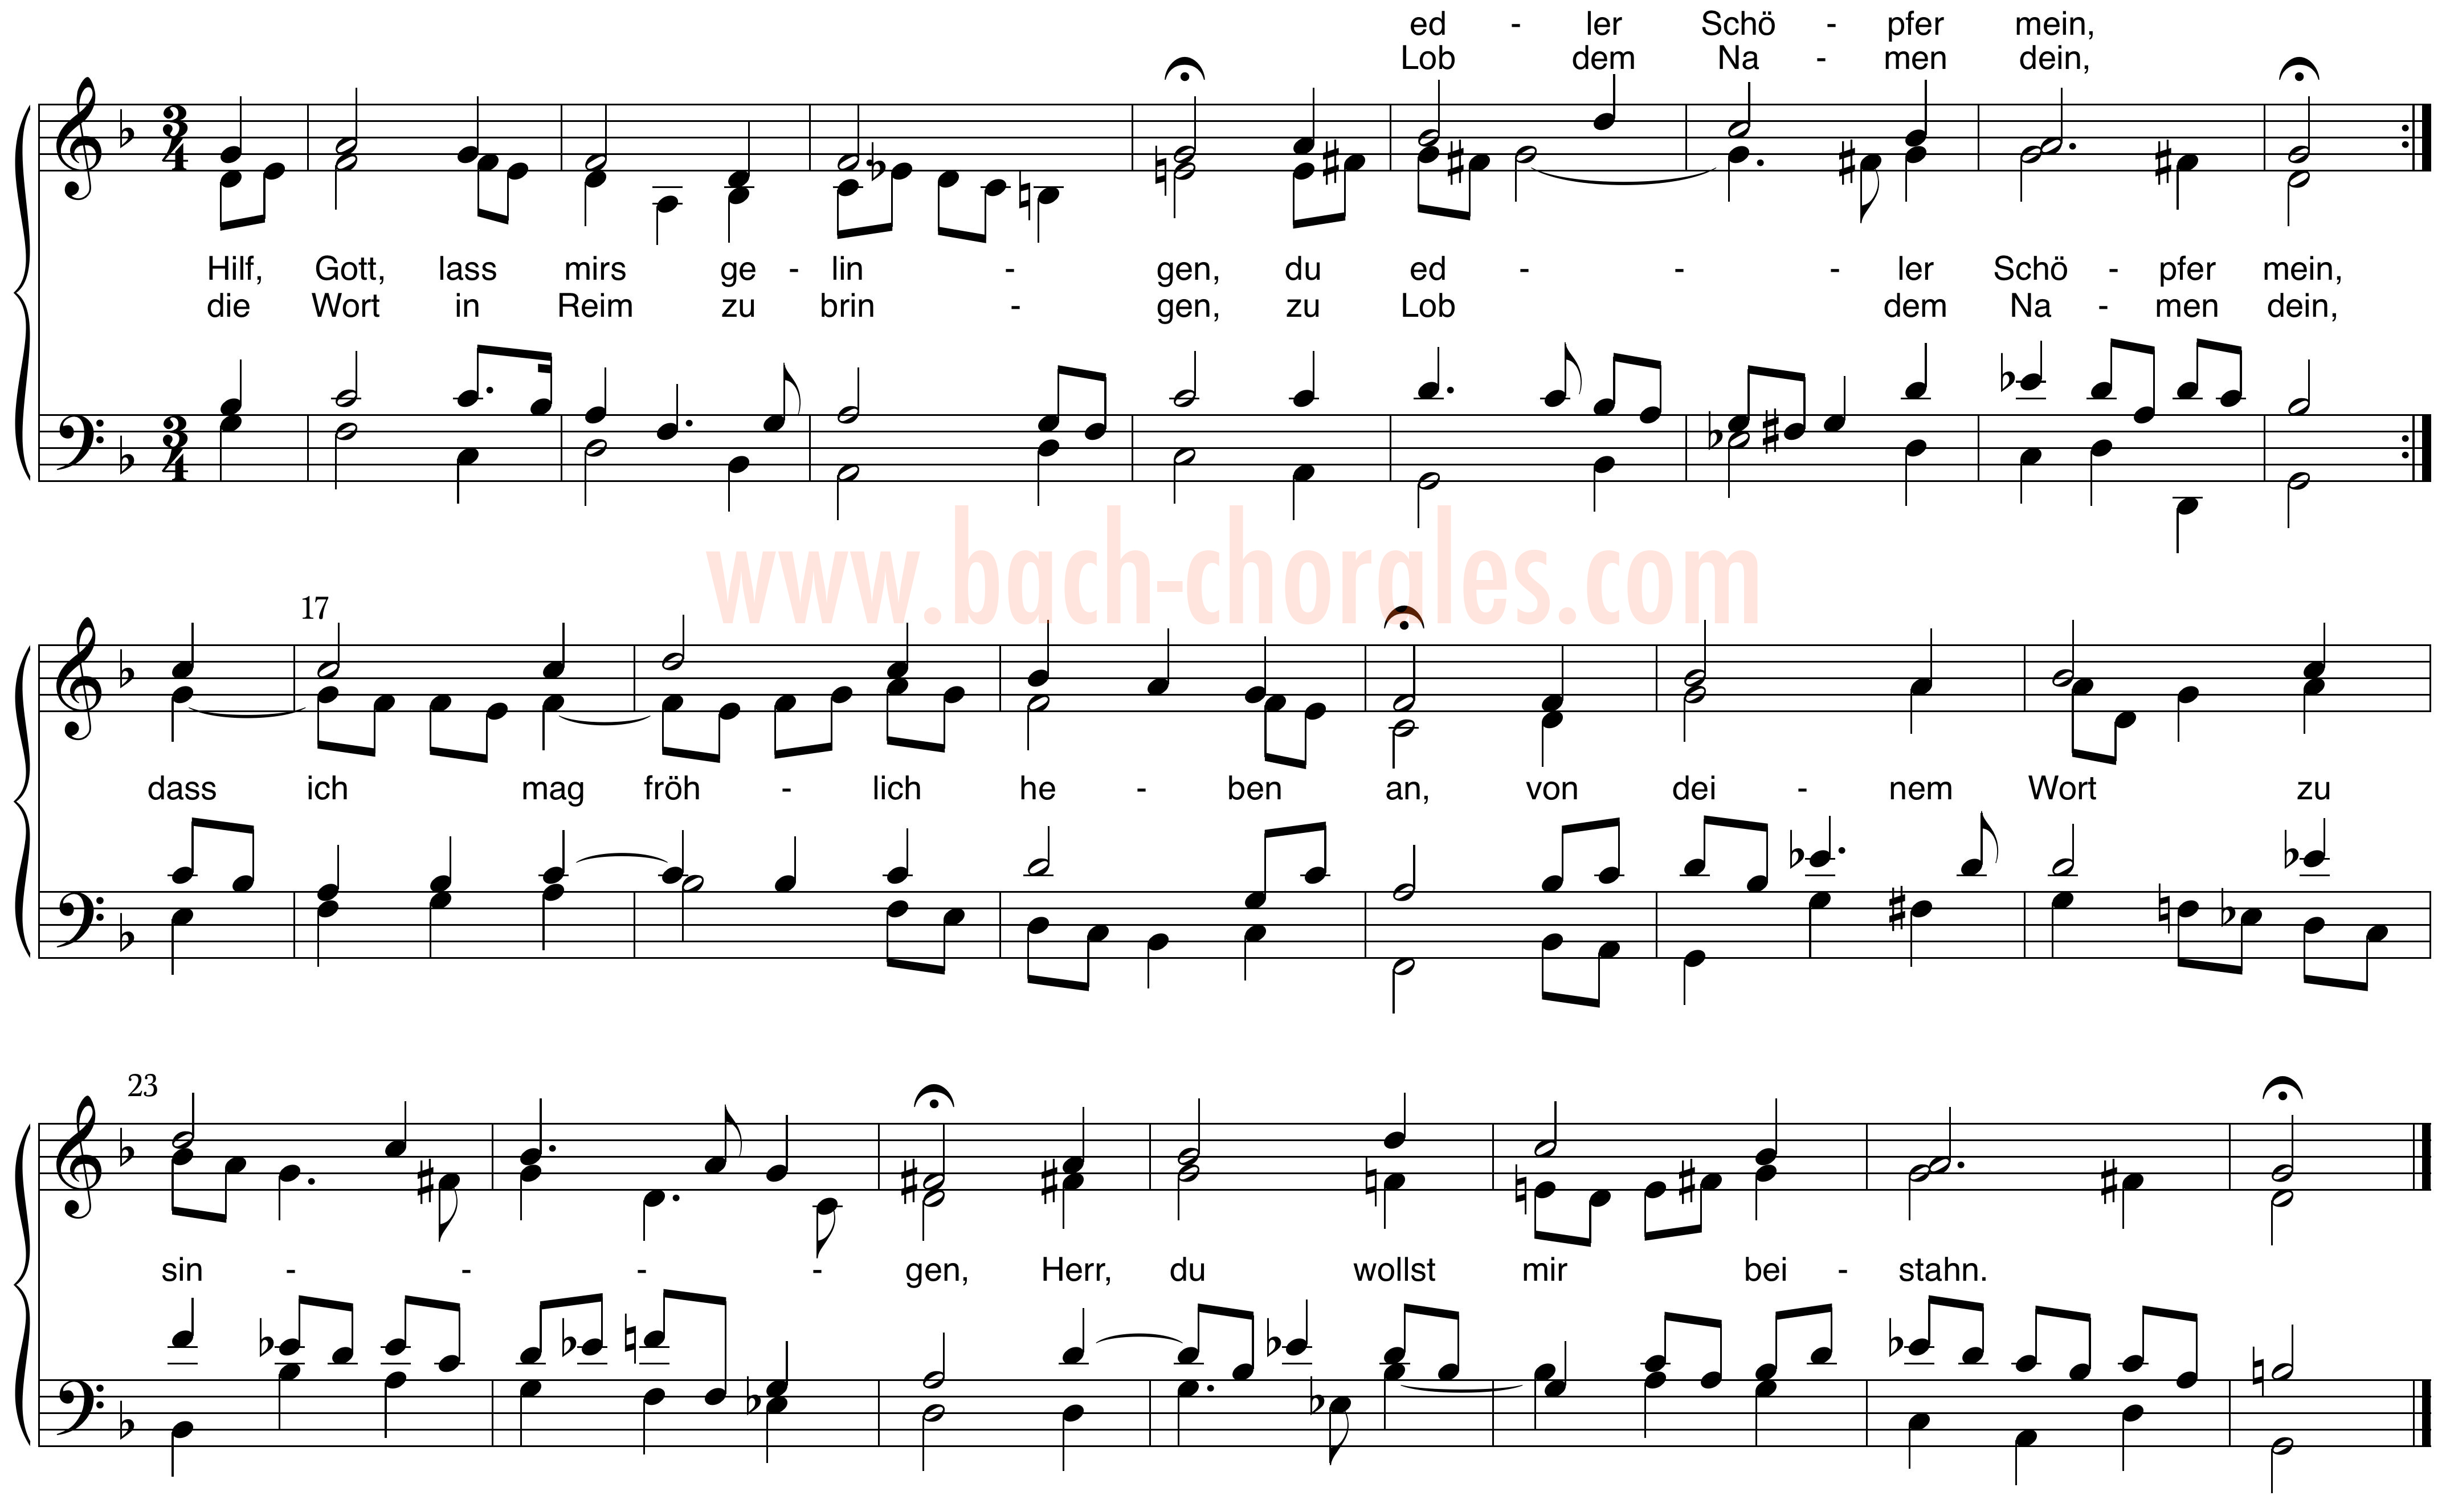 notenbeeld BWV 343 op https://www.bach-chorales.com/